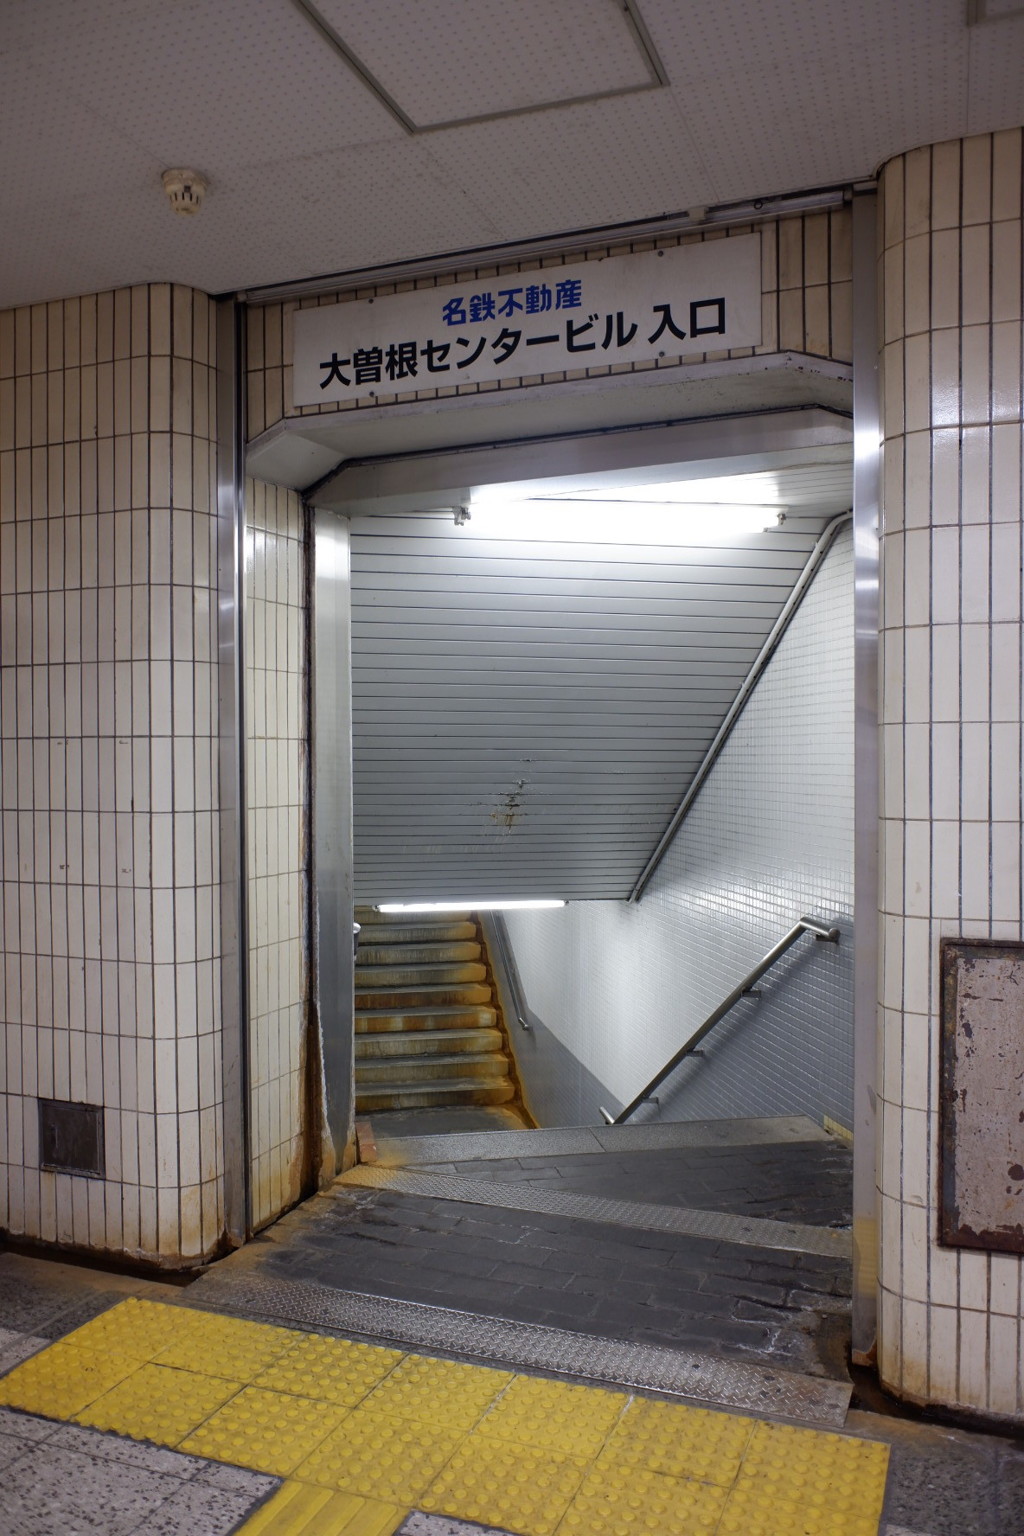 名古屋地下鉄名城線大曽根駅